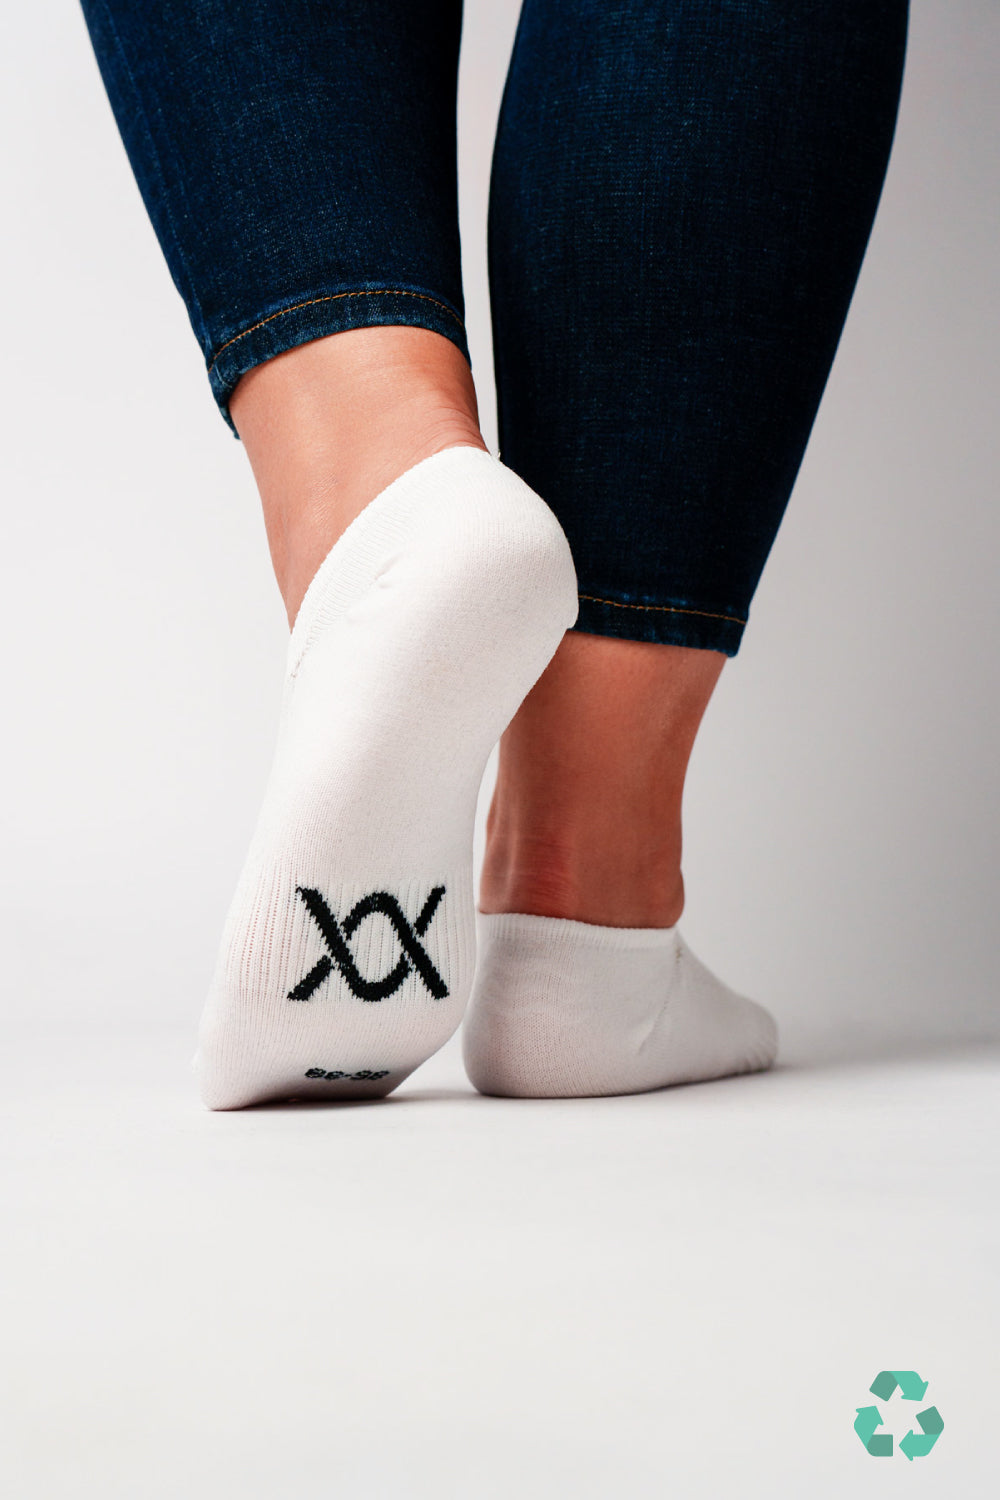 DIXXSON Invisible Füsslinge Socken weiß - von hinten